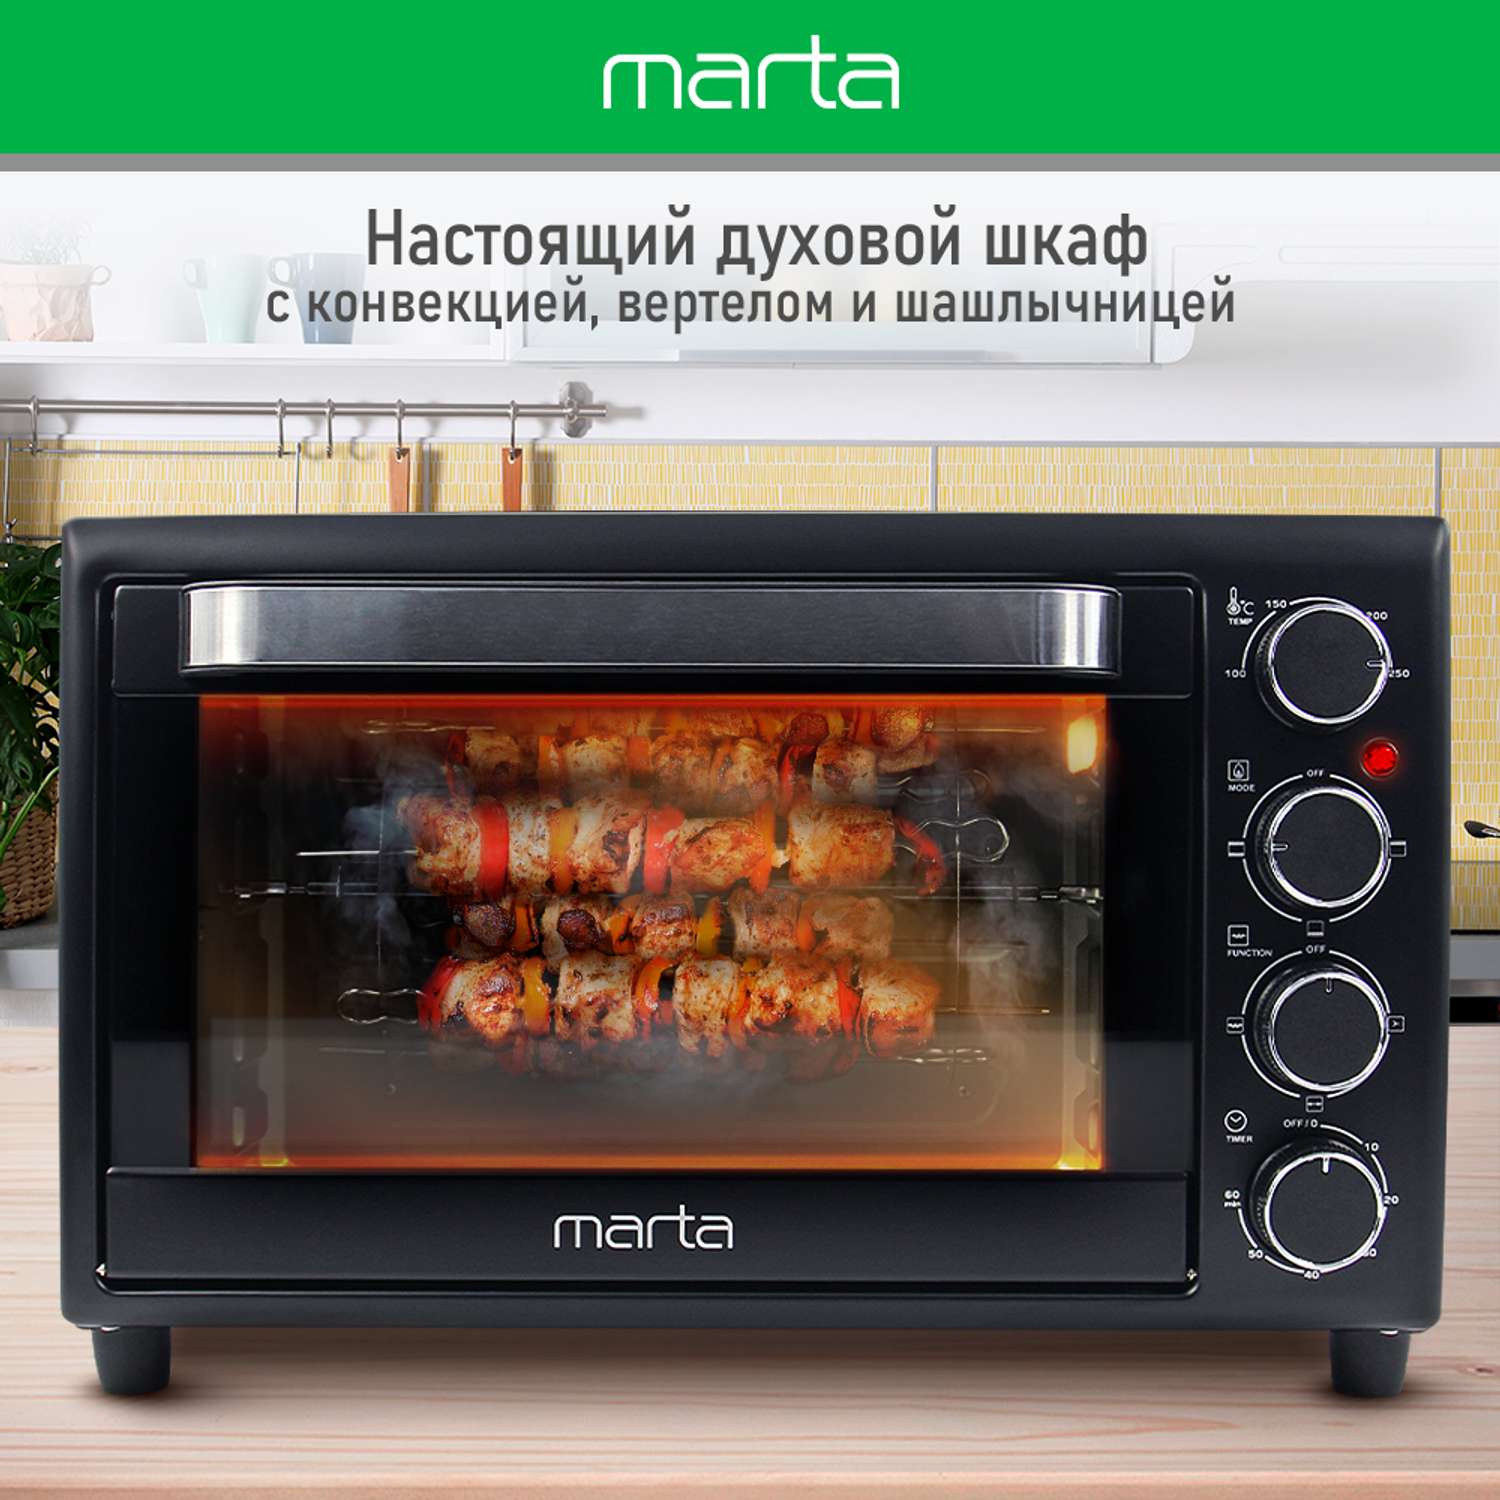 Мини-печь MARTA MT-EO4299A духовой шкаф/черный жемчуг - фото 6